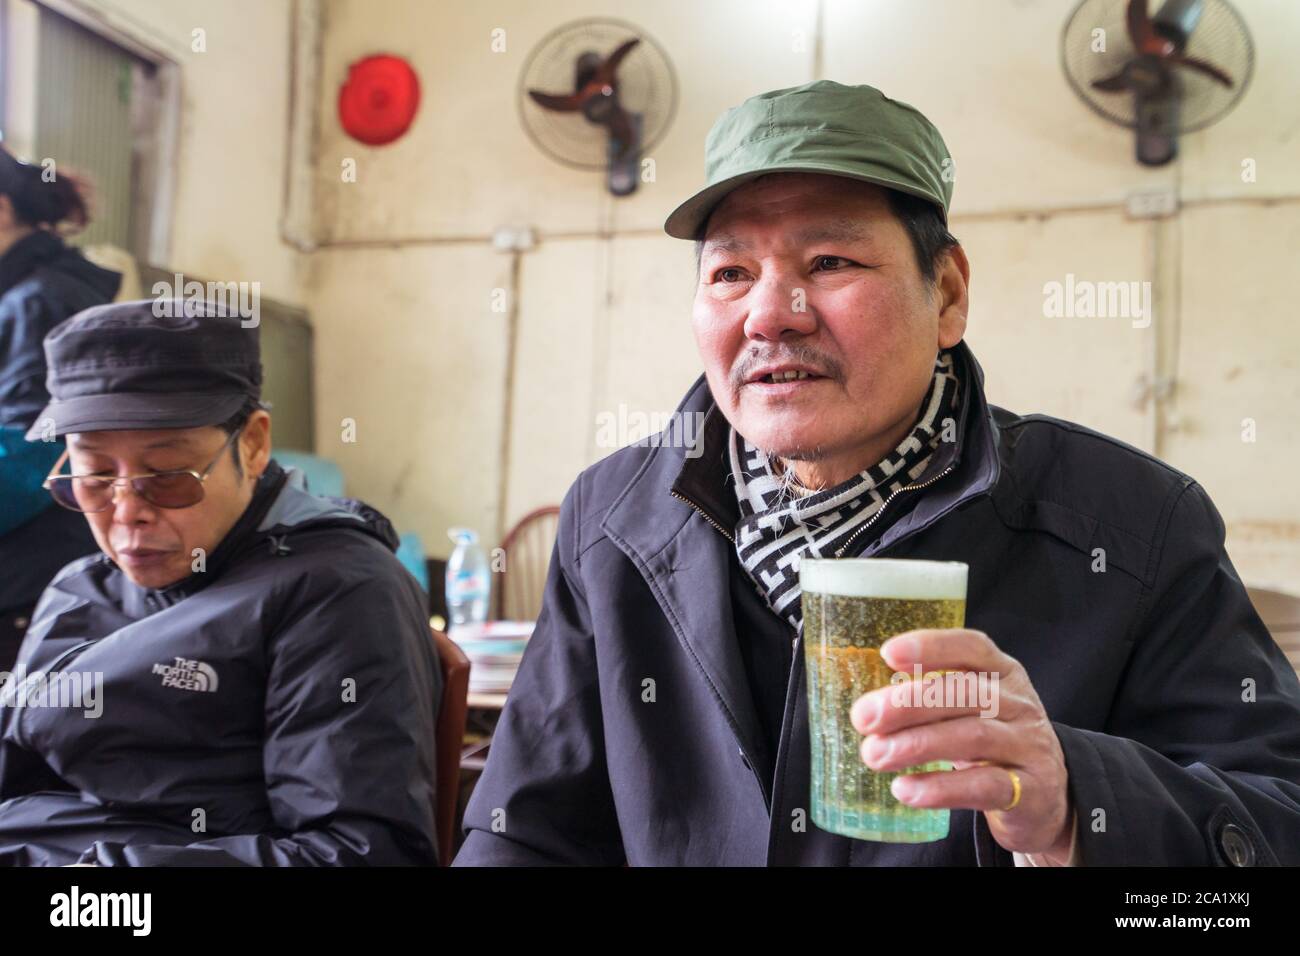 Hanoï / Vietnam - 21 janvier 2020 : l'homme vietnamien boit de la bière dans un restaurant local Banque D'Images